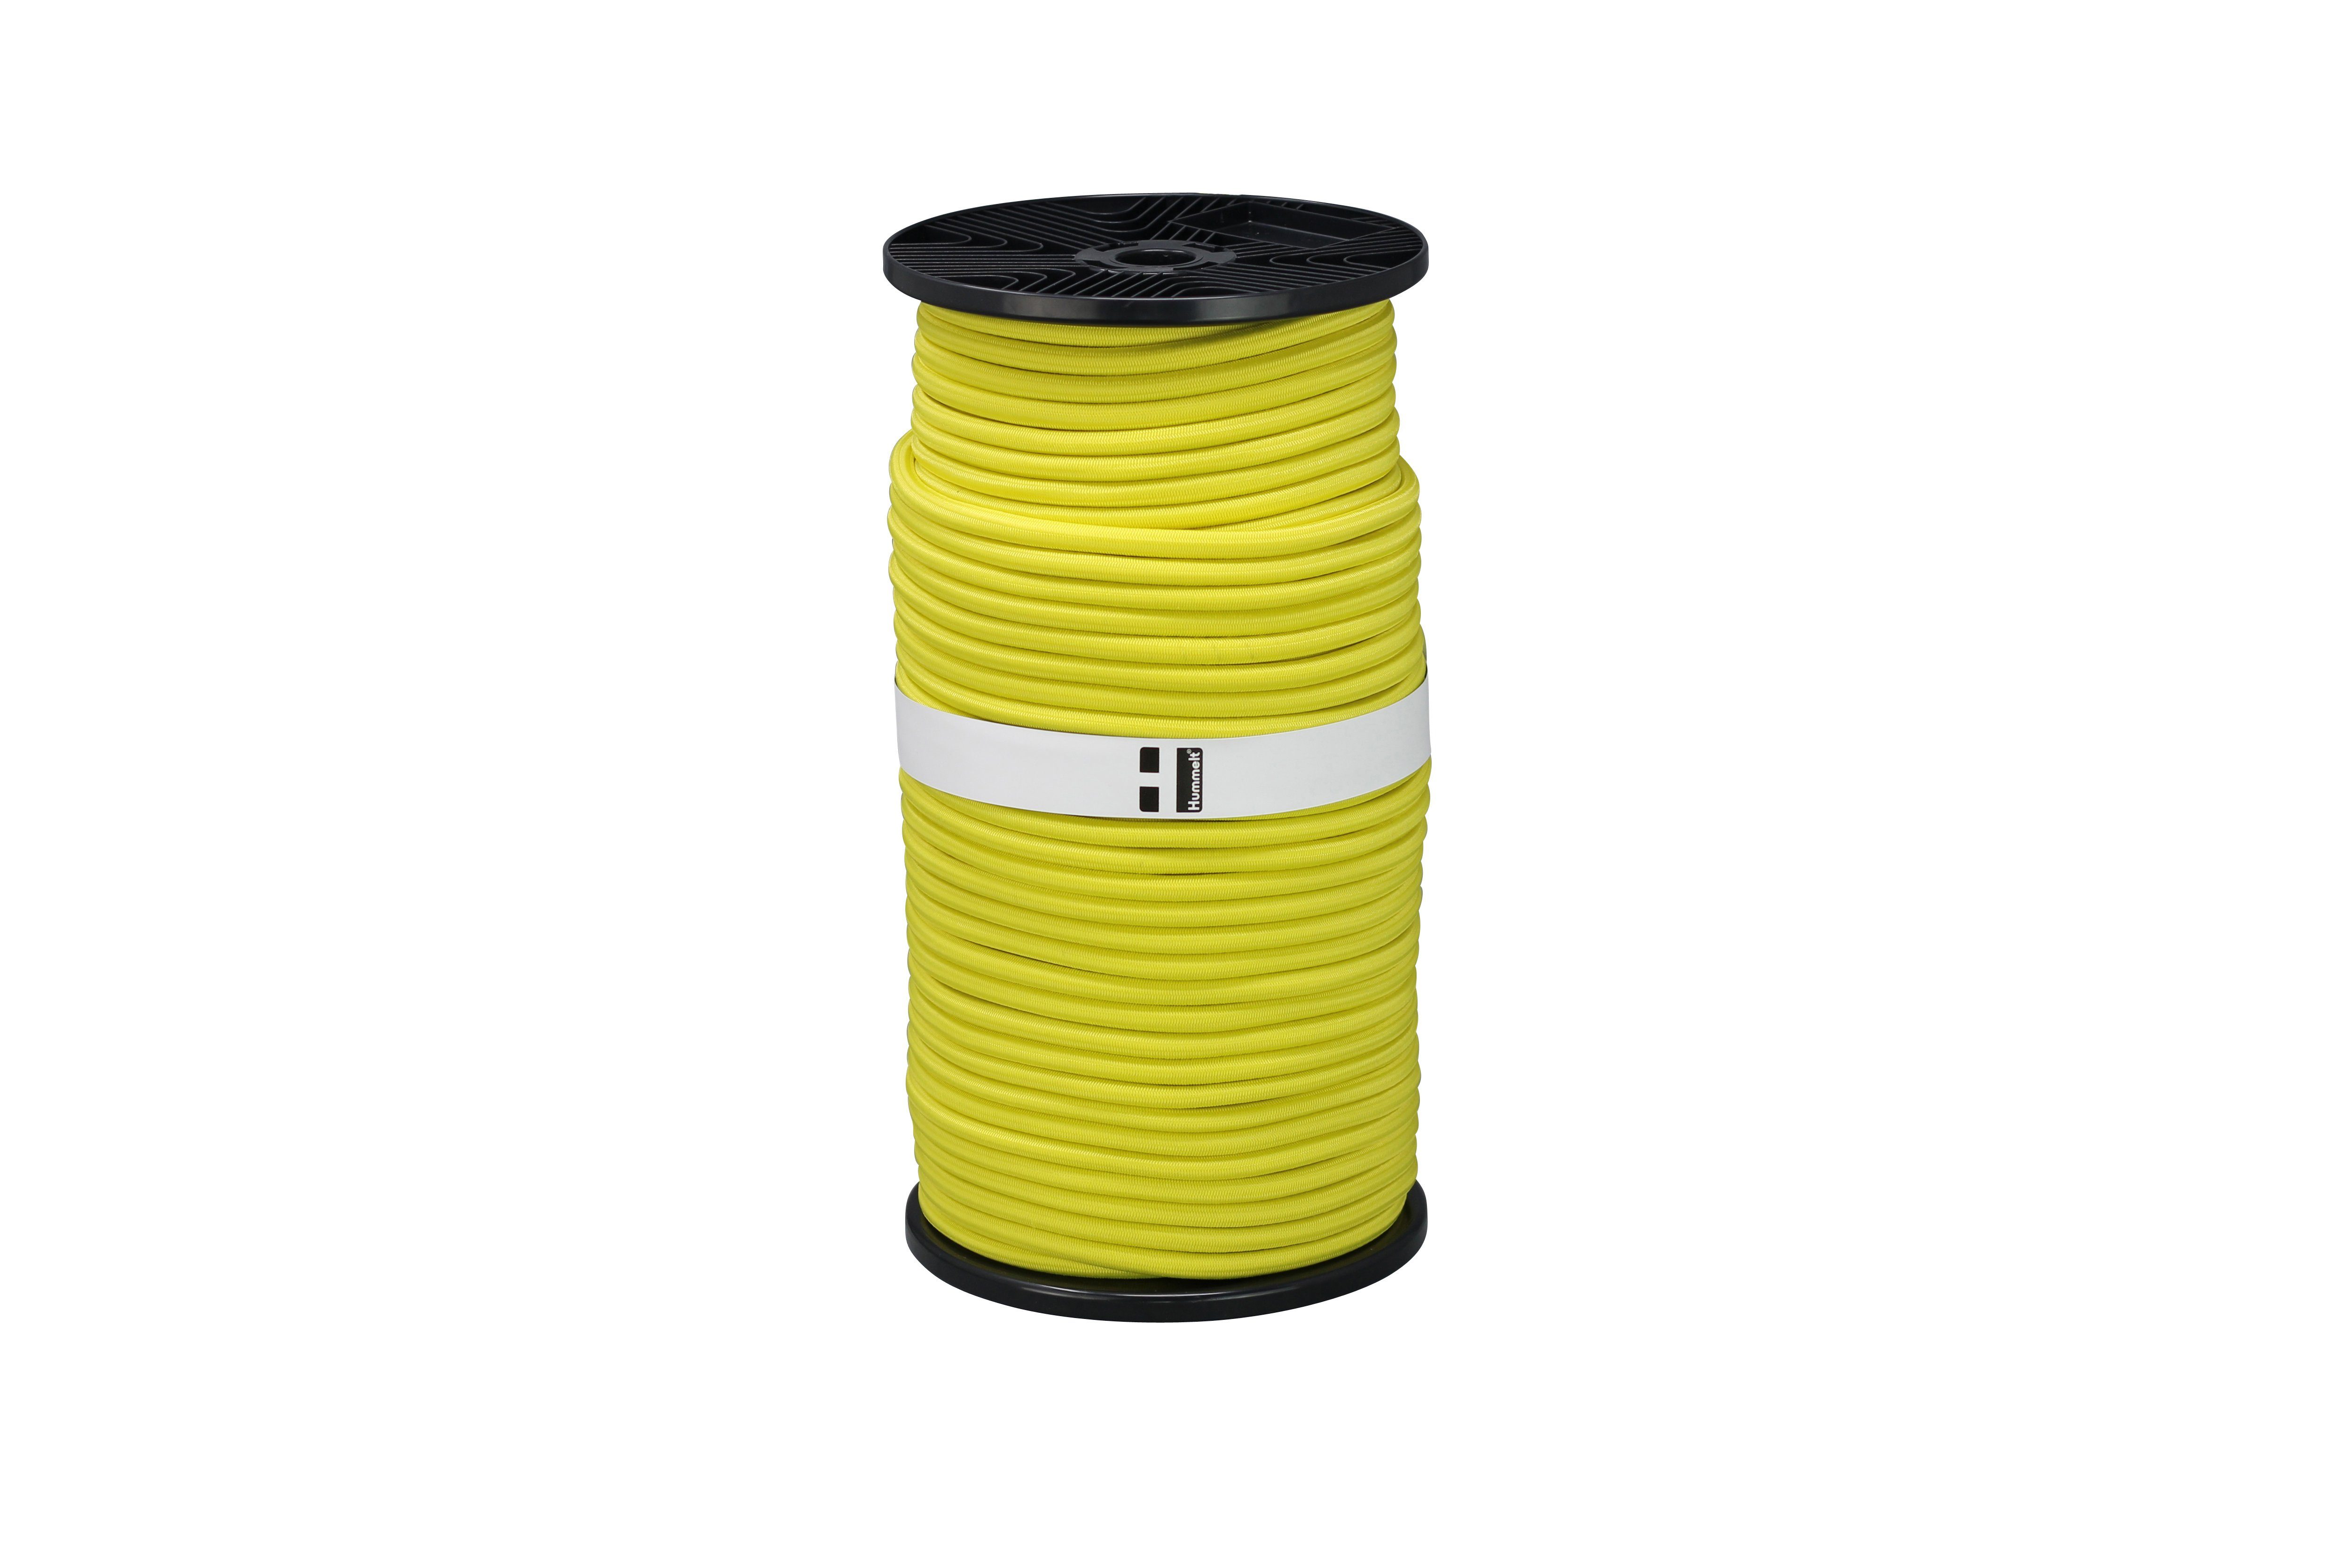 Hummelt® Expanderseil Seil (Gummiseil 8mm, 10m bis 100m zum Teil auf Rolle), versch. Farben weiß, schwarz, rot, grün, orange, blau, gelb